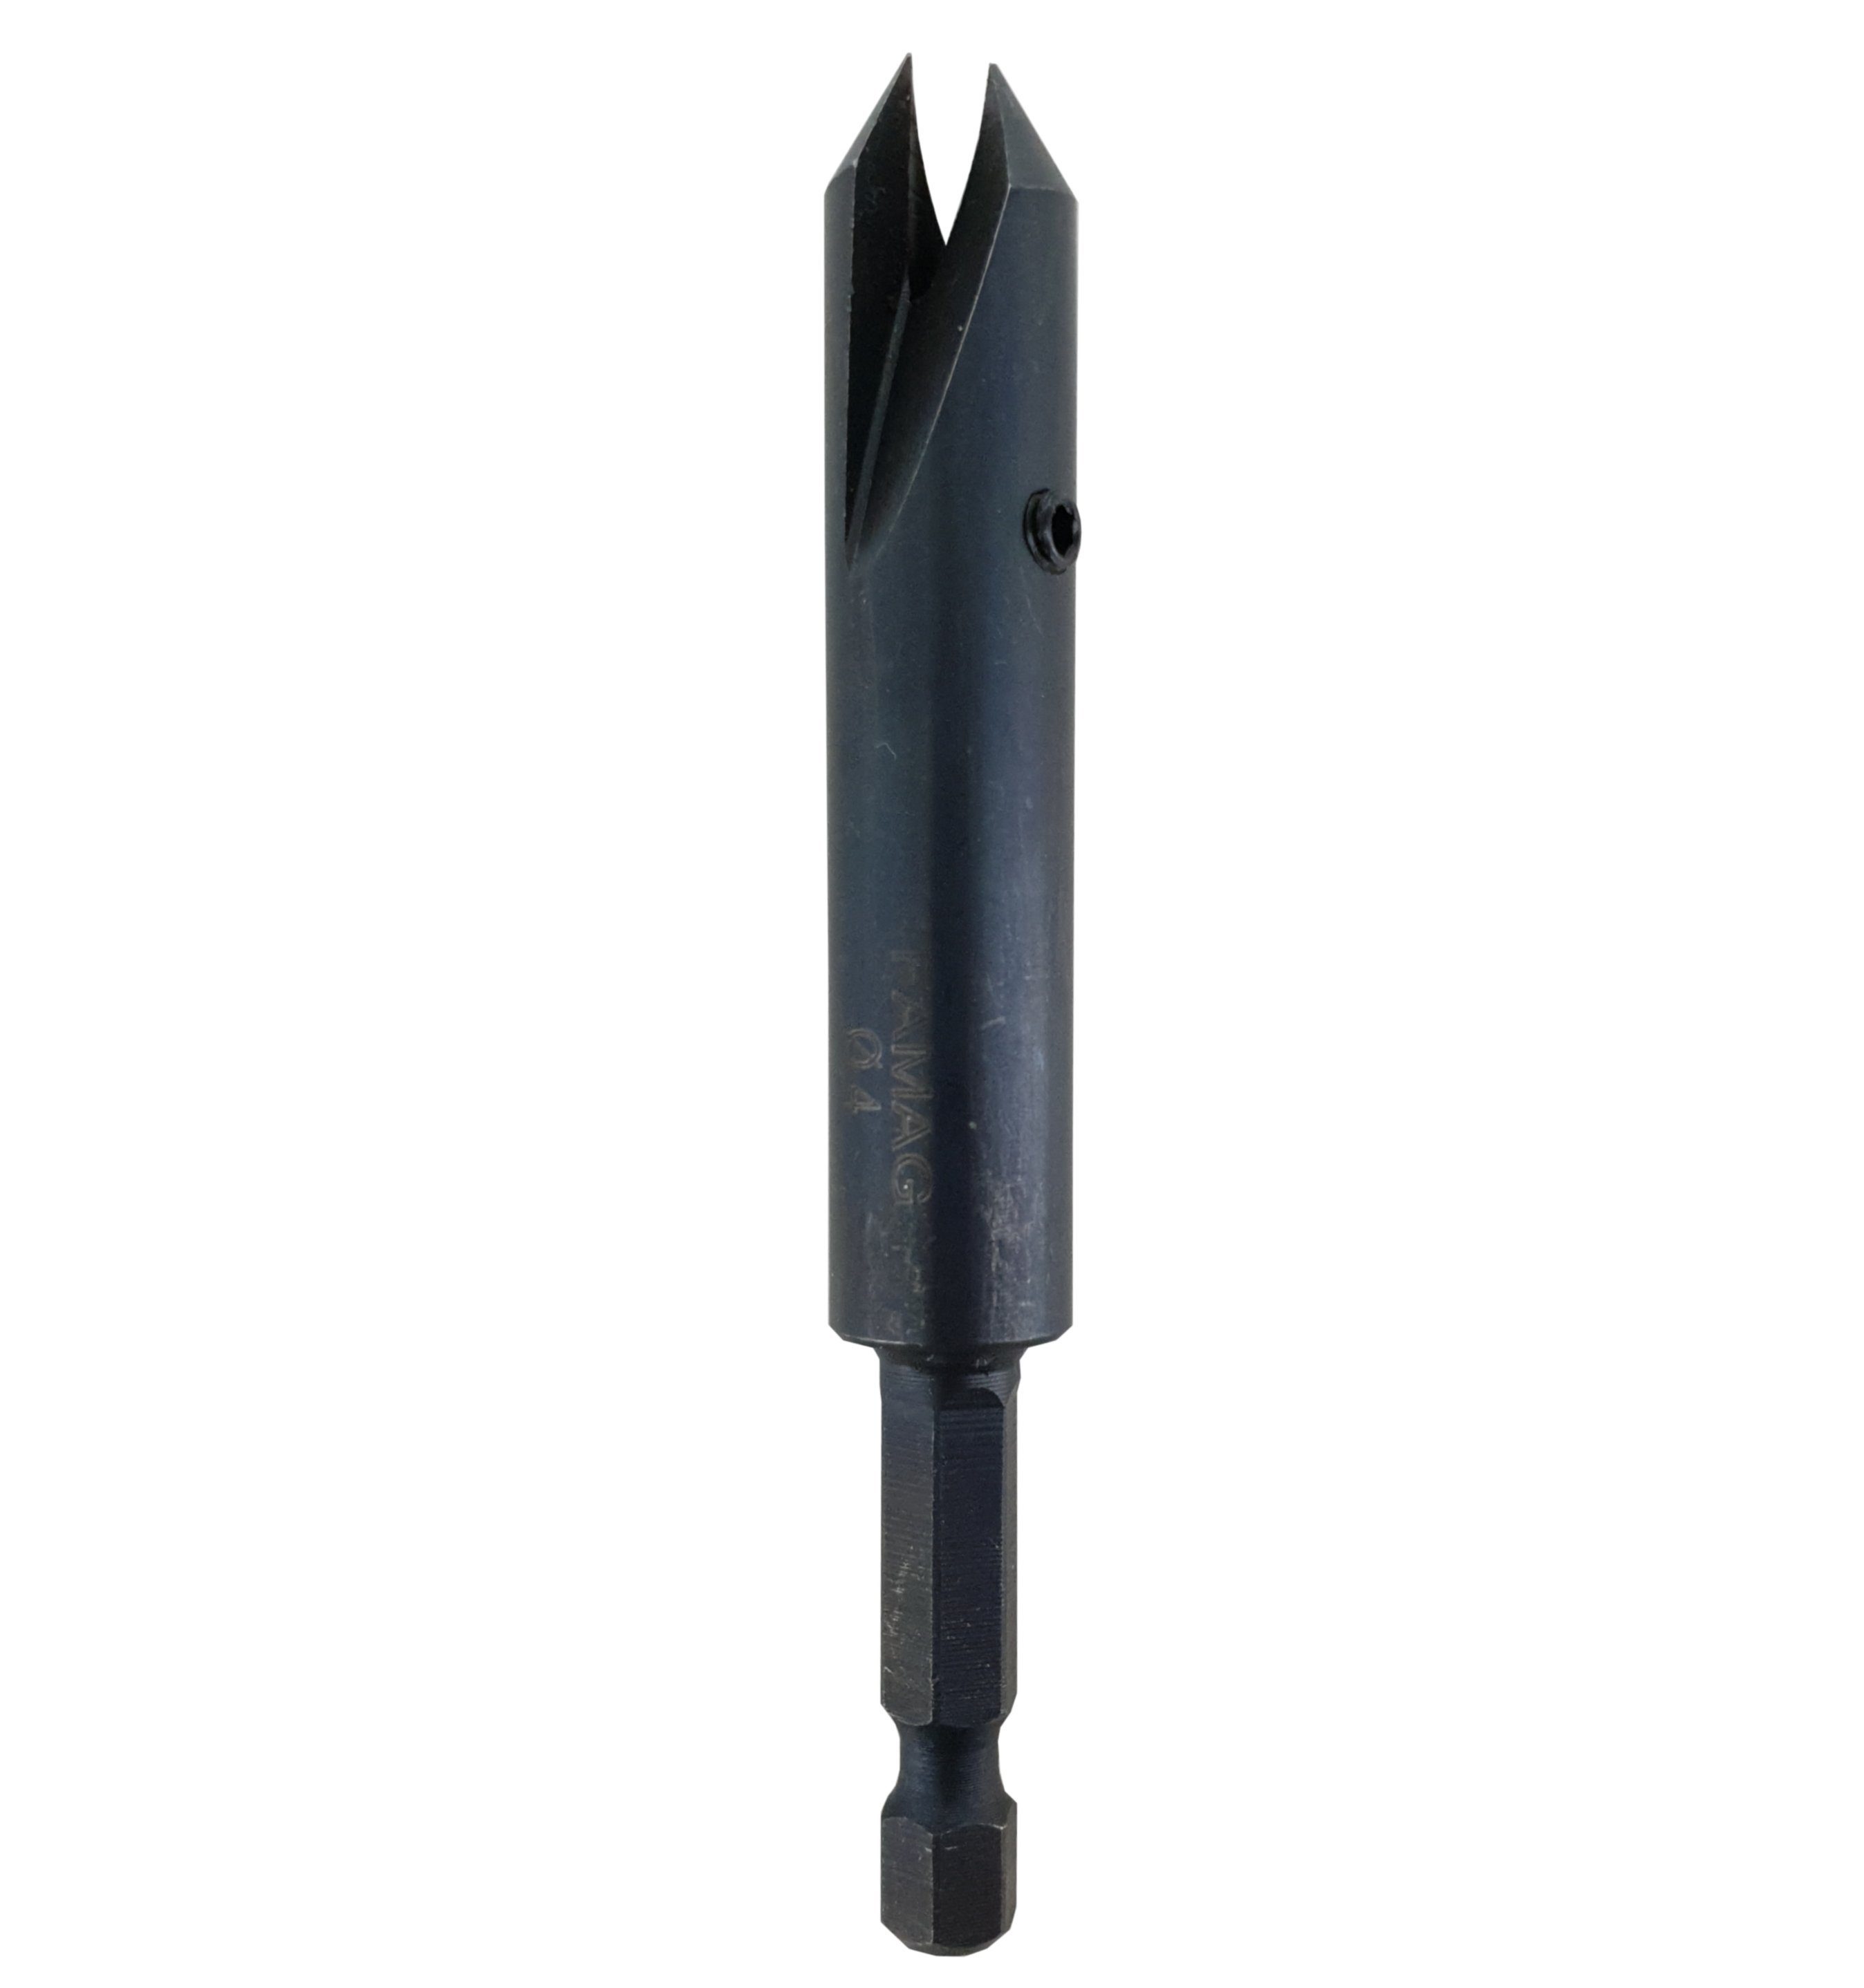 FAMAG Innendurchmesser, Senker Senkdurchmesser FAMAG 4mm Senkbohrer 3577 12mm